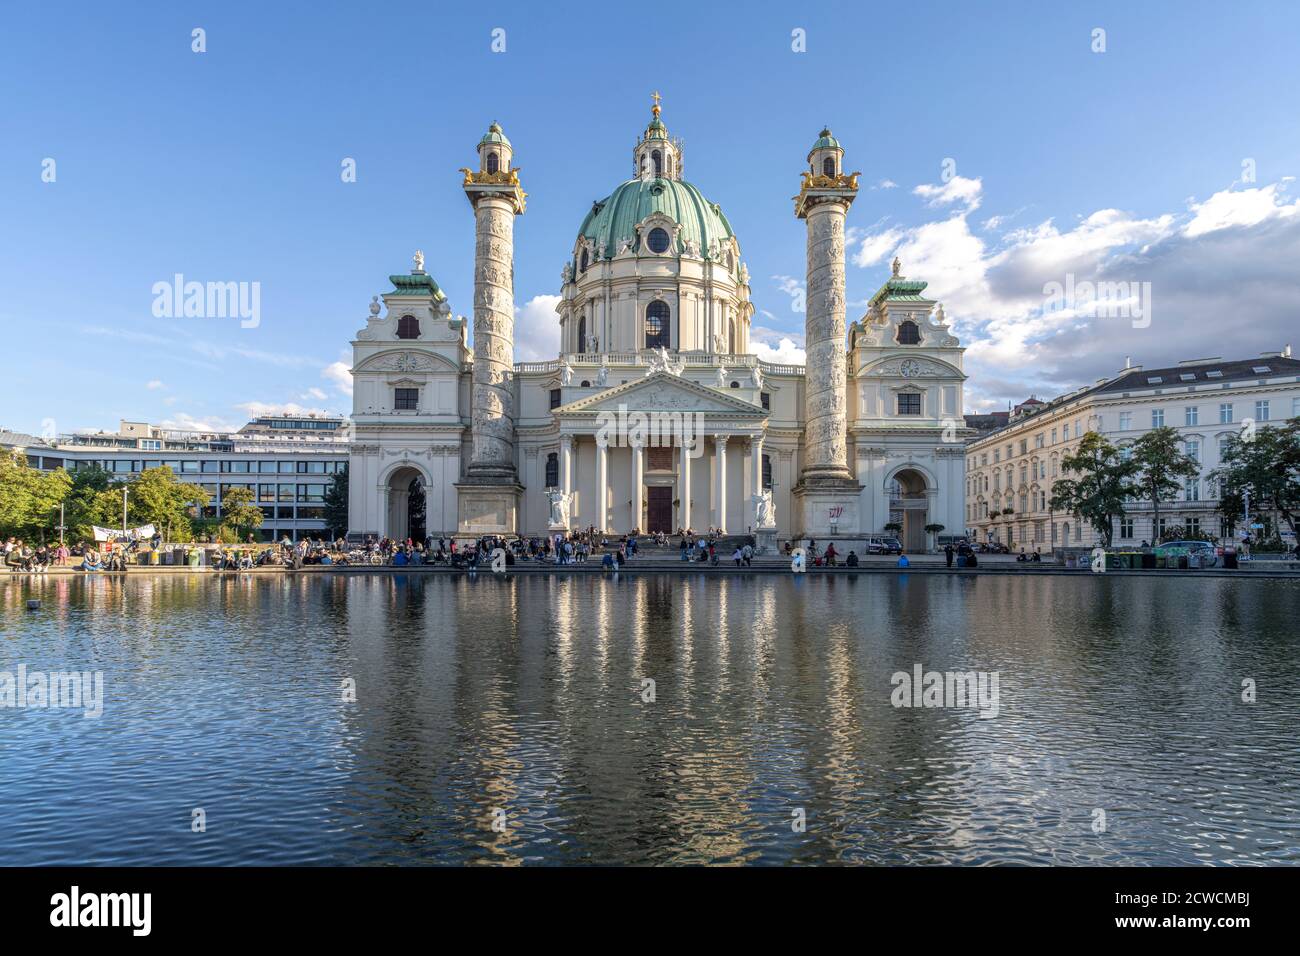 Die barocke Karlskirche à Wien, Österreich, Europa | église baroque Karlskirche à Vienne, Autriche, Europe Banque D'Images